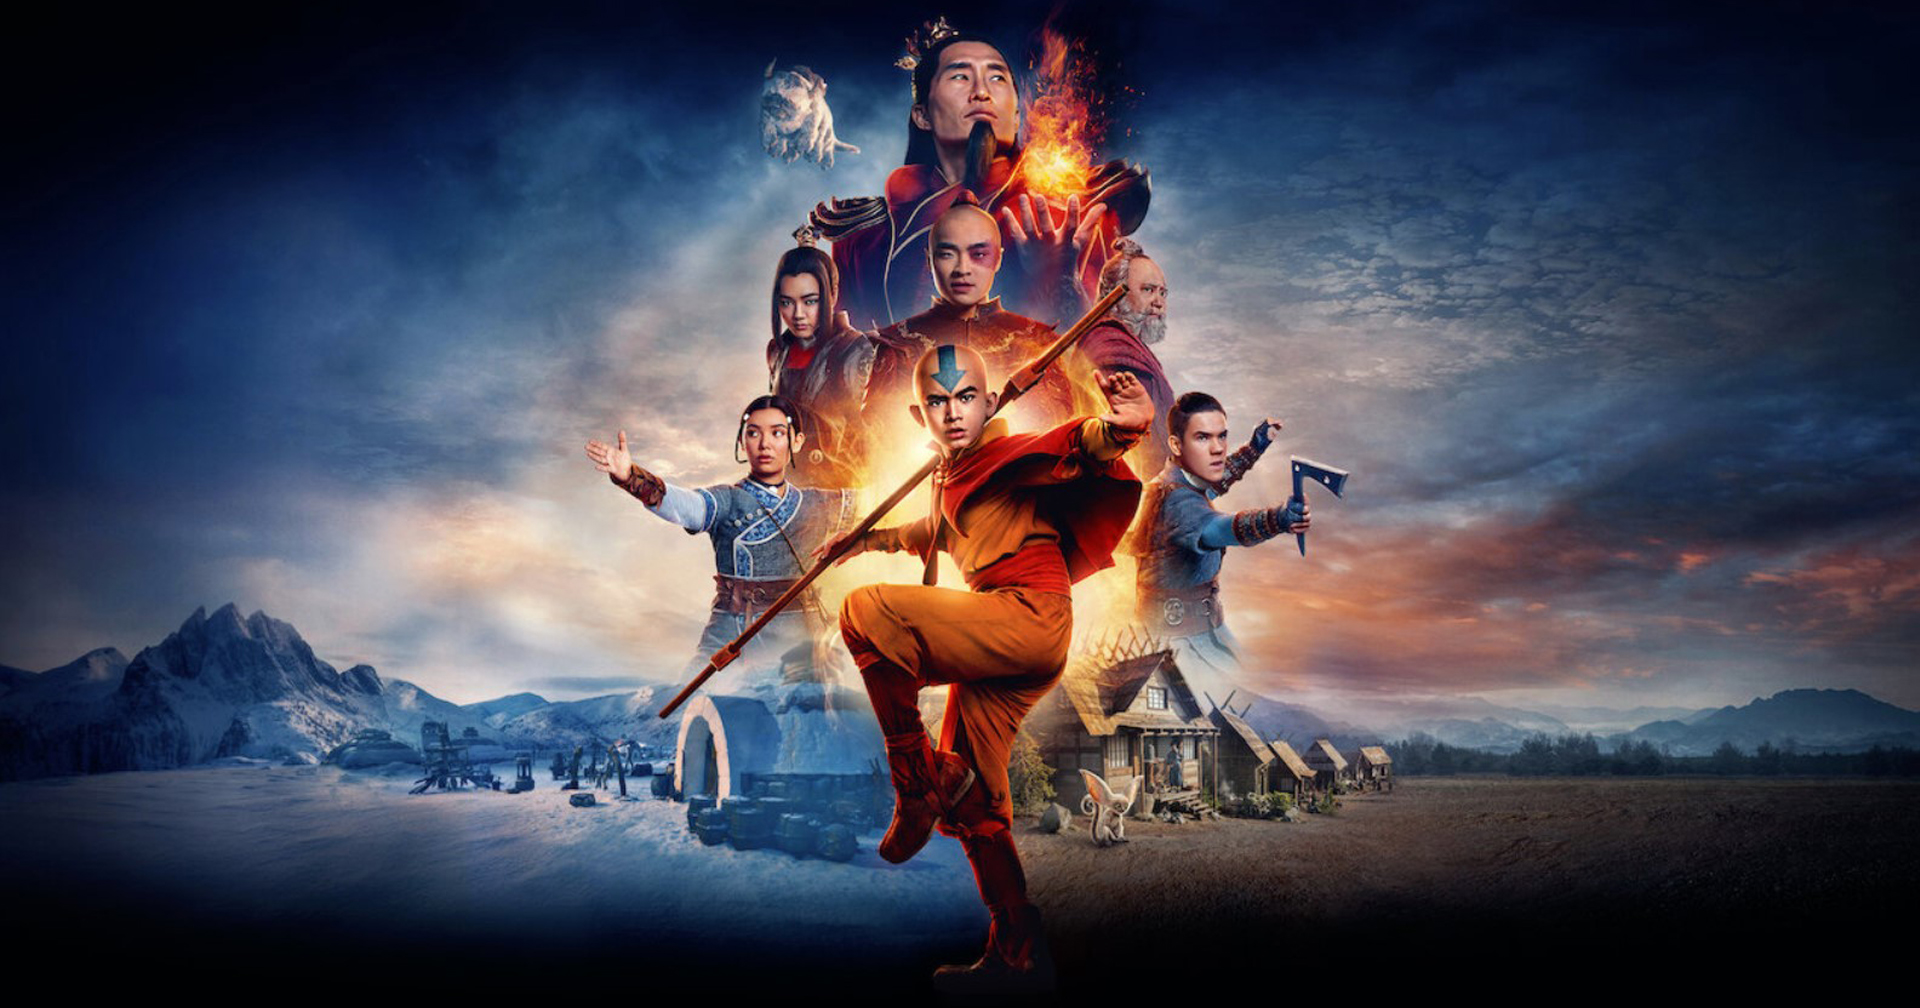 ซีรีส์ ‘Avatar: The Last Airbender’ ของ Netflix ประกาศเปลี่ยนตัวโชว์รันเนอร์ (อีกแล้ว)